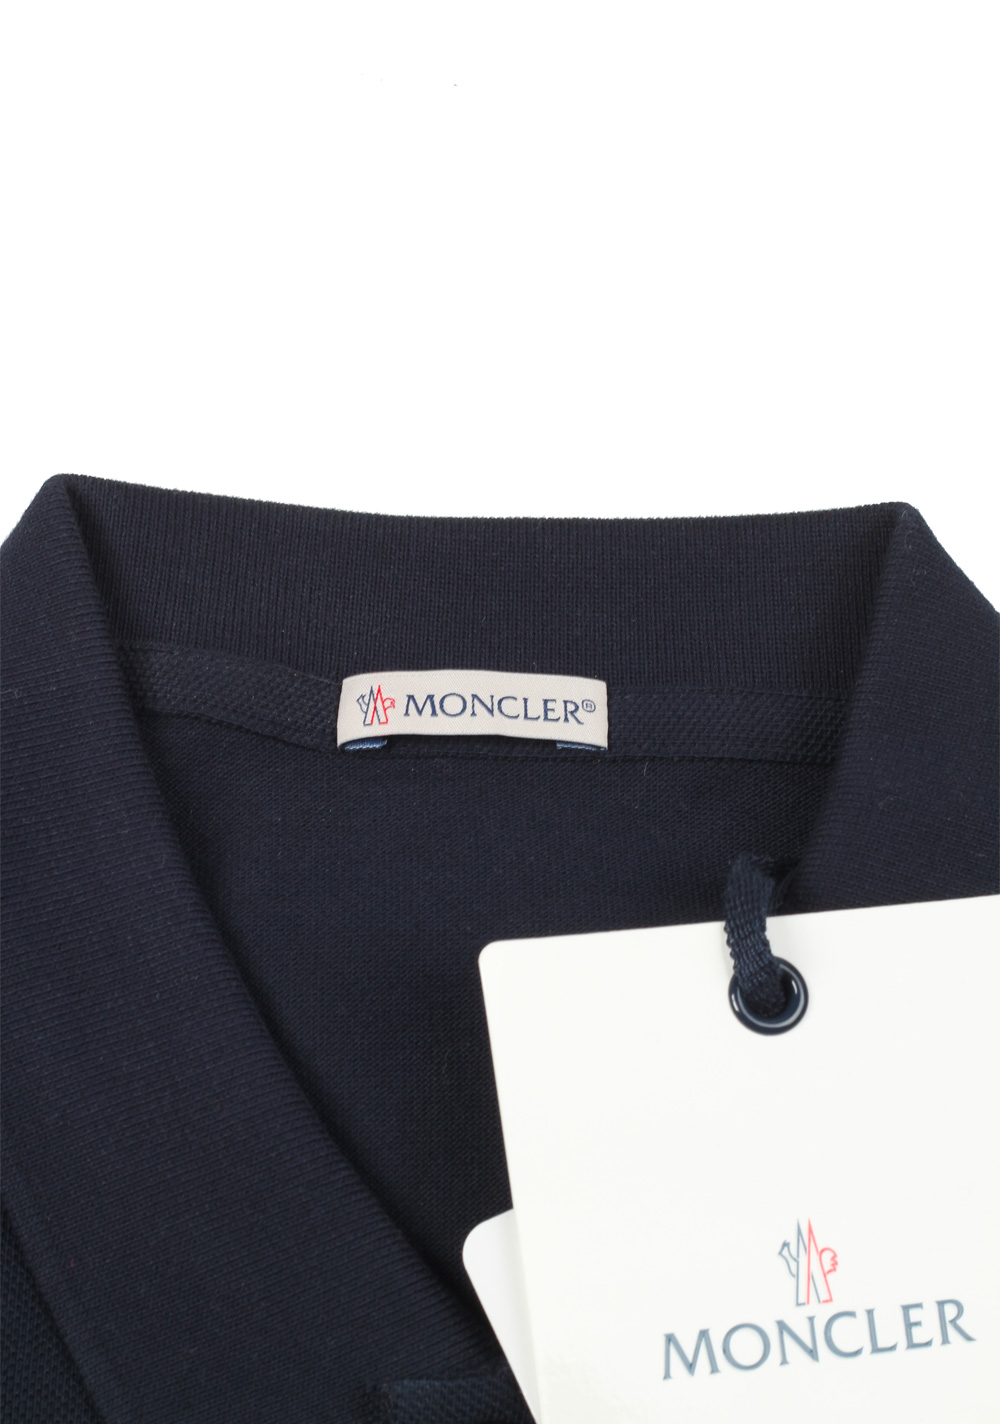 Moncler Navy Polo Shirt Size L / 40R U.S. Navy | Costume Limité